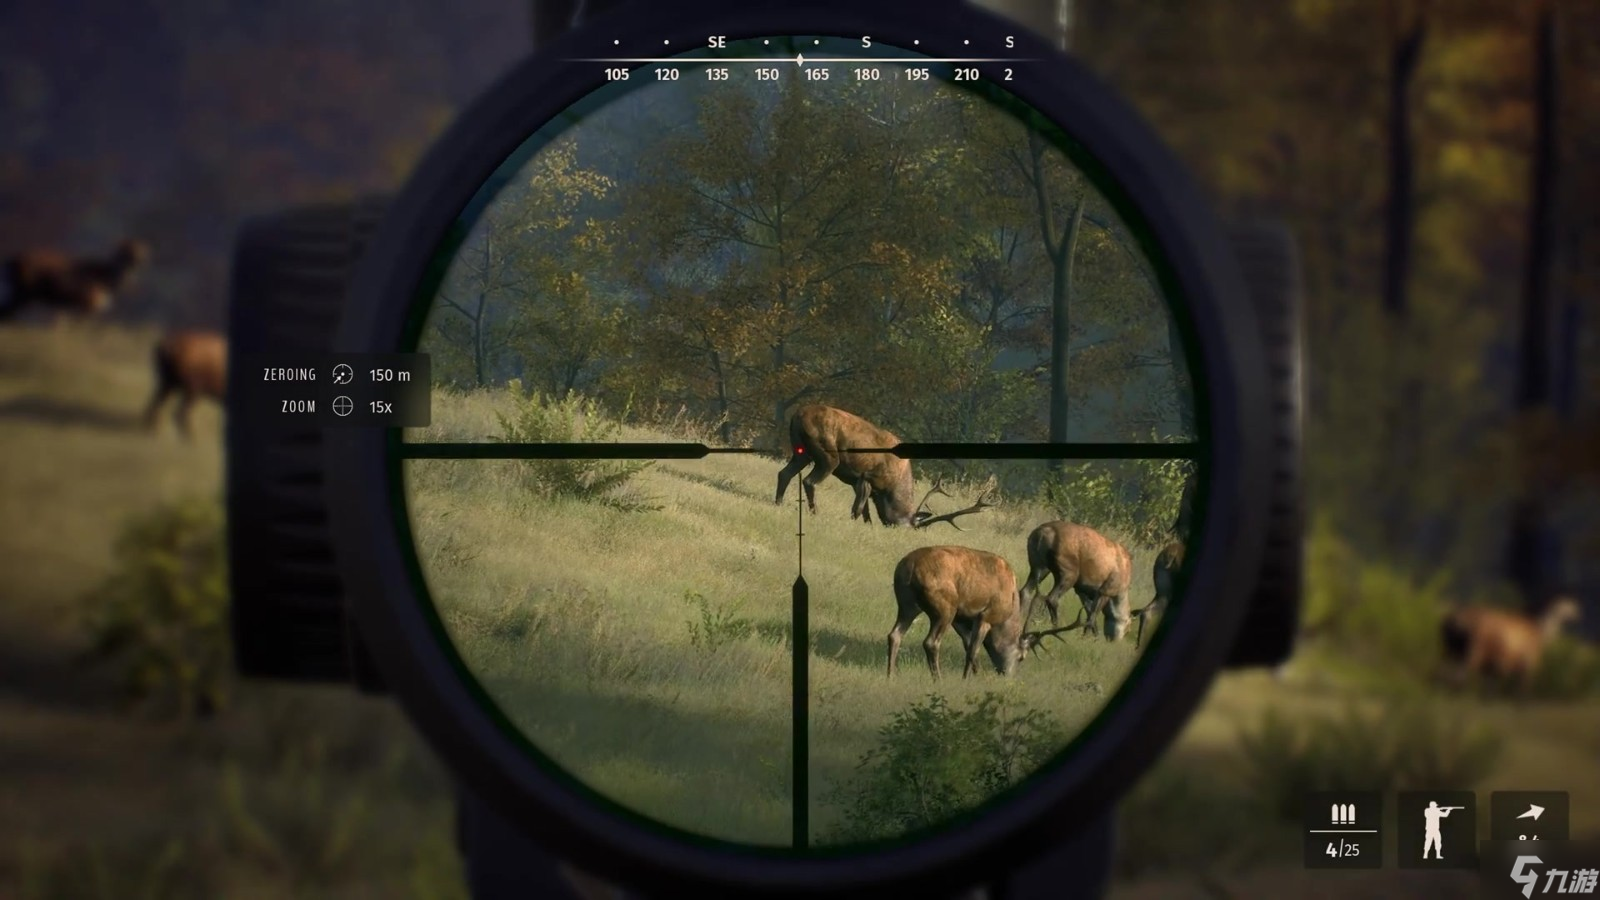 狩猎模拟游戏《狩猎之道》新实机预告/配置信息公布